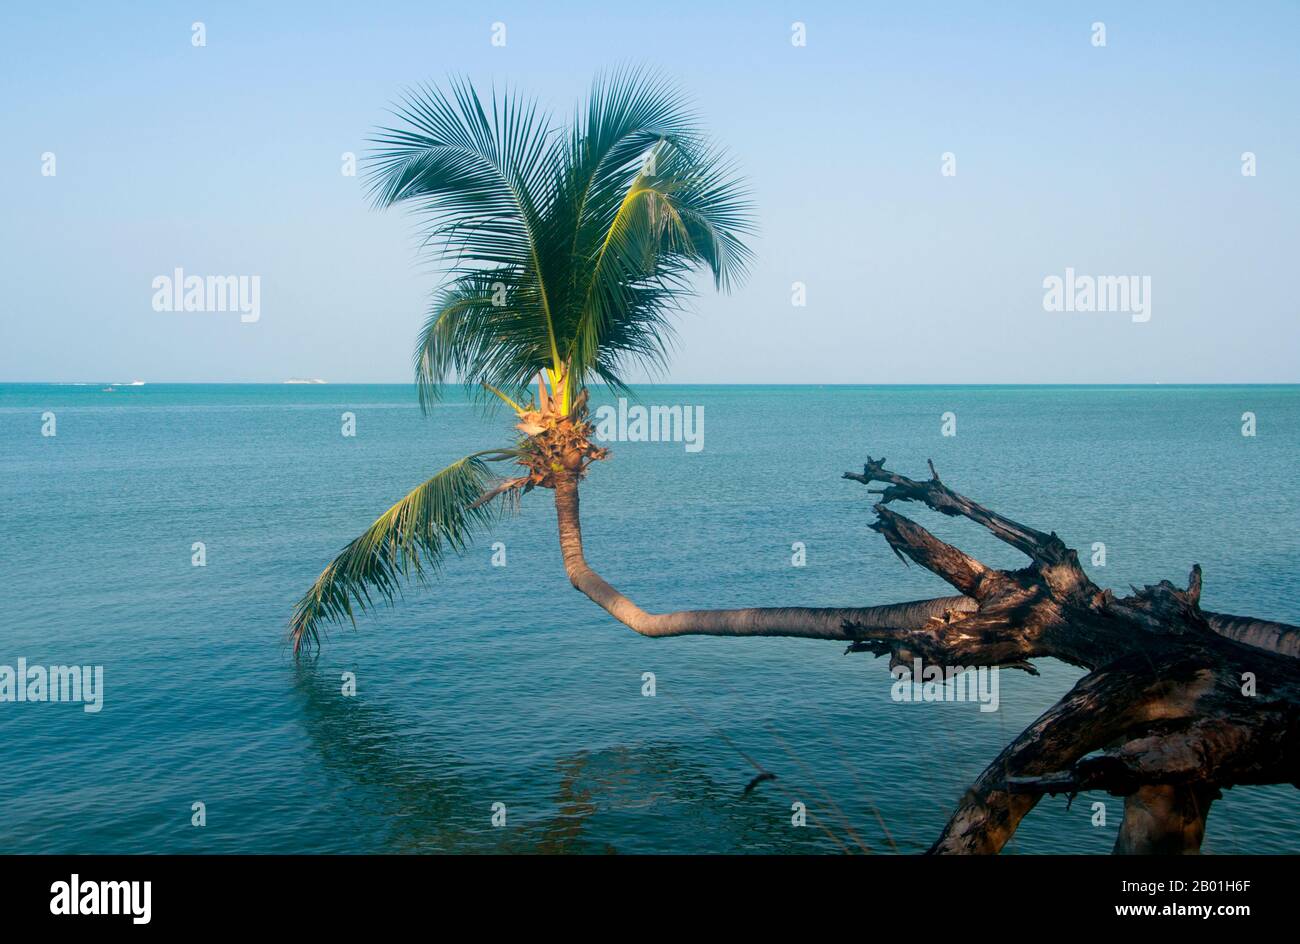 Thailand: In Ao Wok TUM, Ko Phangan wächst eine Kokospalme über dem Meer. Ko Phangan liegt 15 Kilometer (9,5 Meilen) nördlich des berühmten Nachbarn Ko Samui und mit 168 65 etwa zwei Drittel seiner Größe. Die Insel hat die gleiche tropische Kombination aus weißen Sandstränden, zugänglichen Korallenriffen und zerklüftetem, im Dschungel gestalteten Innern. Einst der Zufluchtsort von Budget-Reisenden, die dem teureren Ko Samui entfliehen wollten, ist es heute langsam etwas gehobener geworden. Die Insel ist nach wie vor viel weniger für den internationalen Tourismus entwickelt als Ko Samui, was zum Teil auf die Isolation und das schlechte Infrastruktursystem zurückzuführen ist. Stockfoto